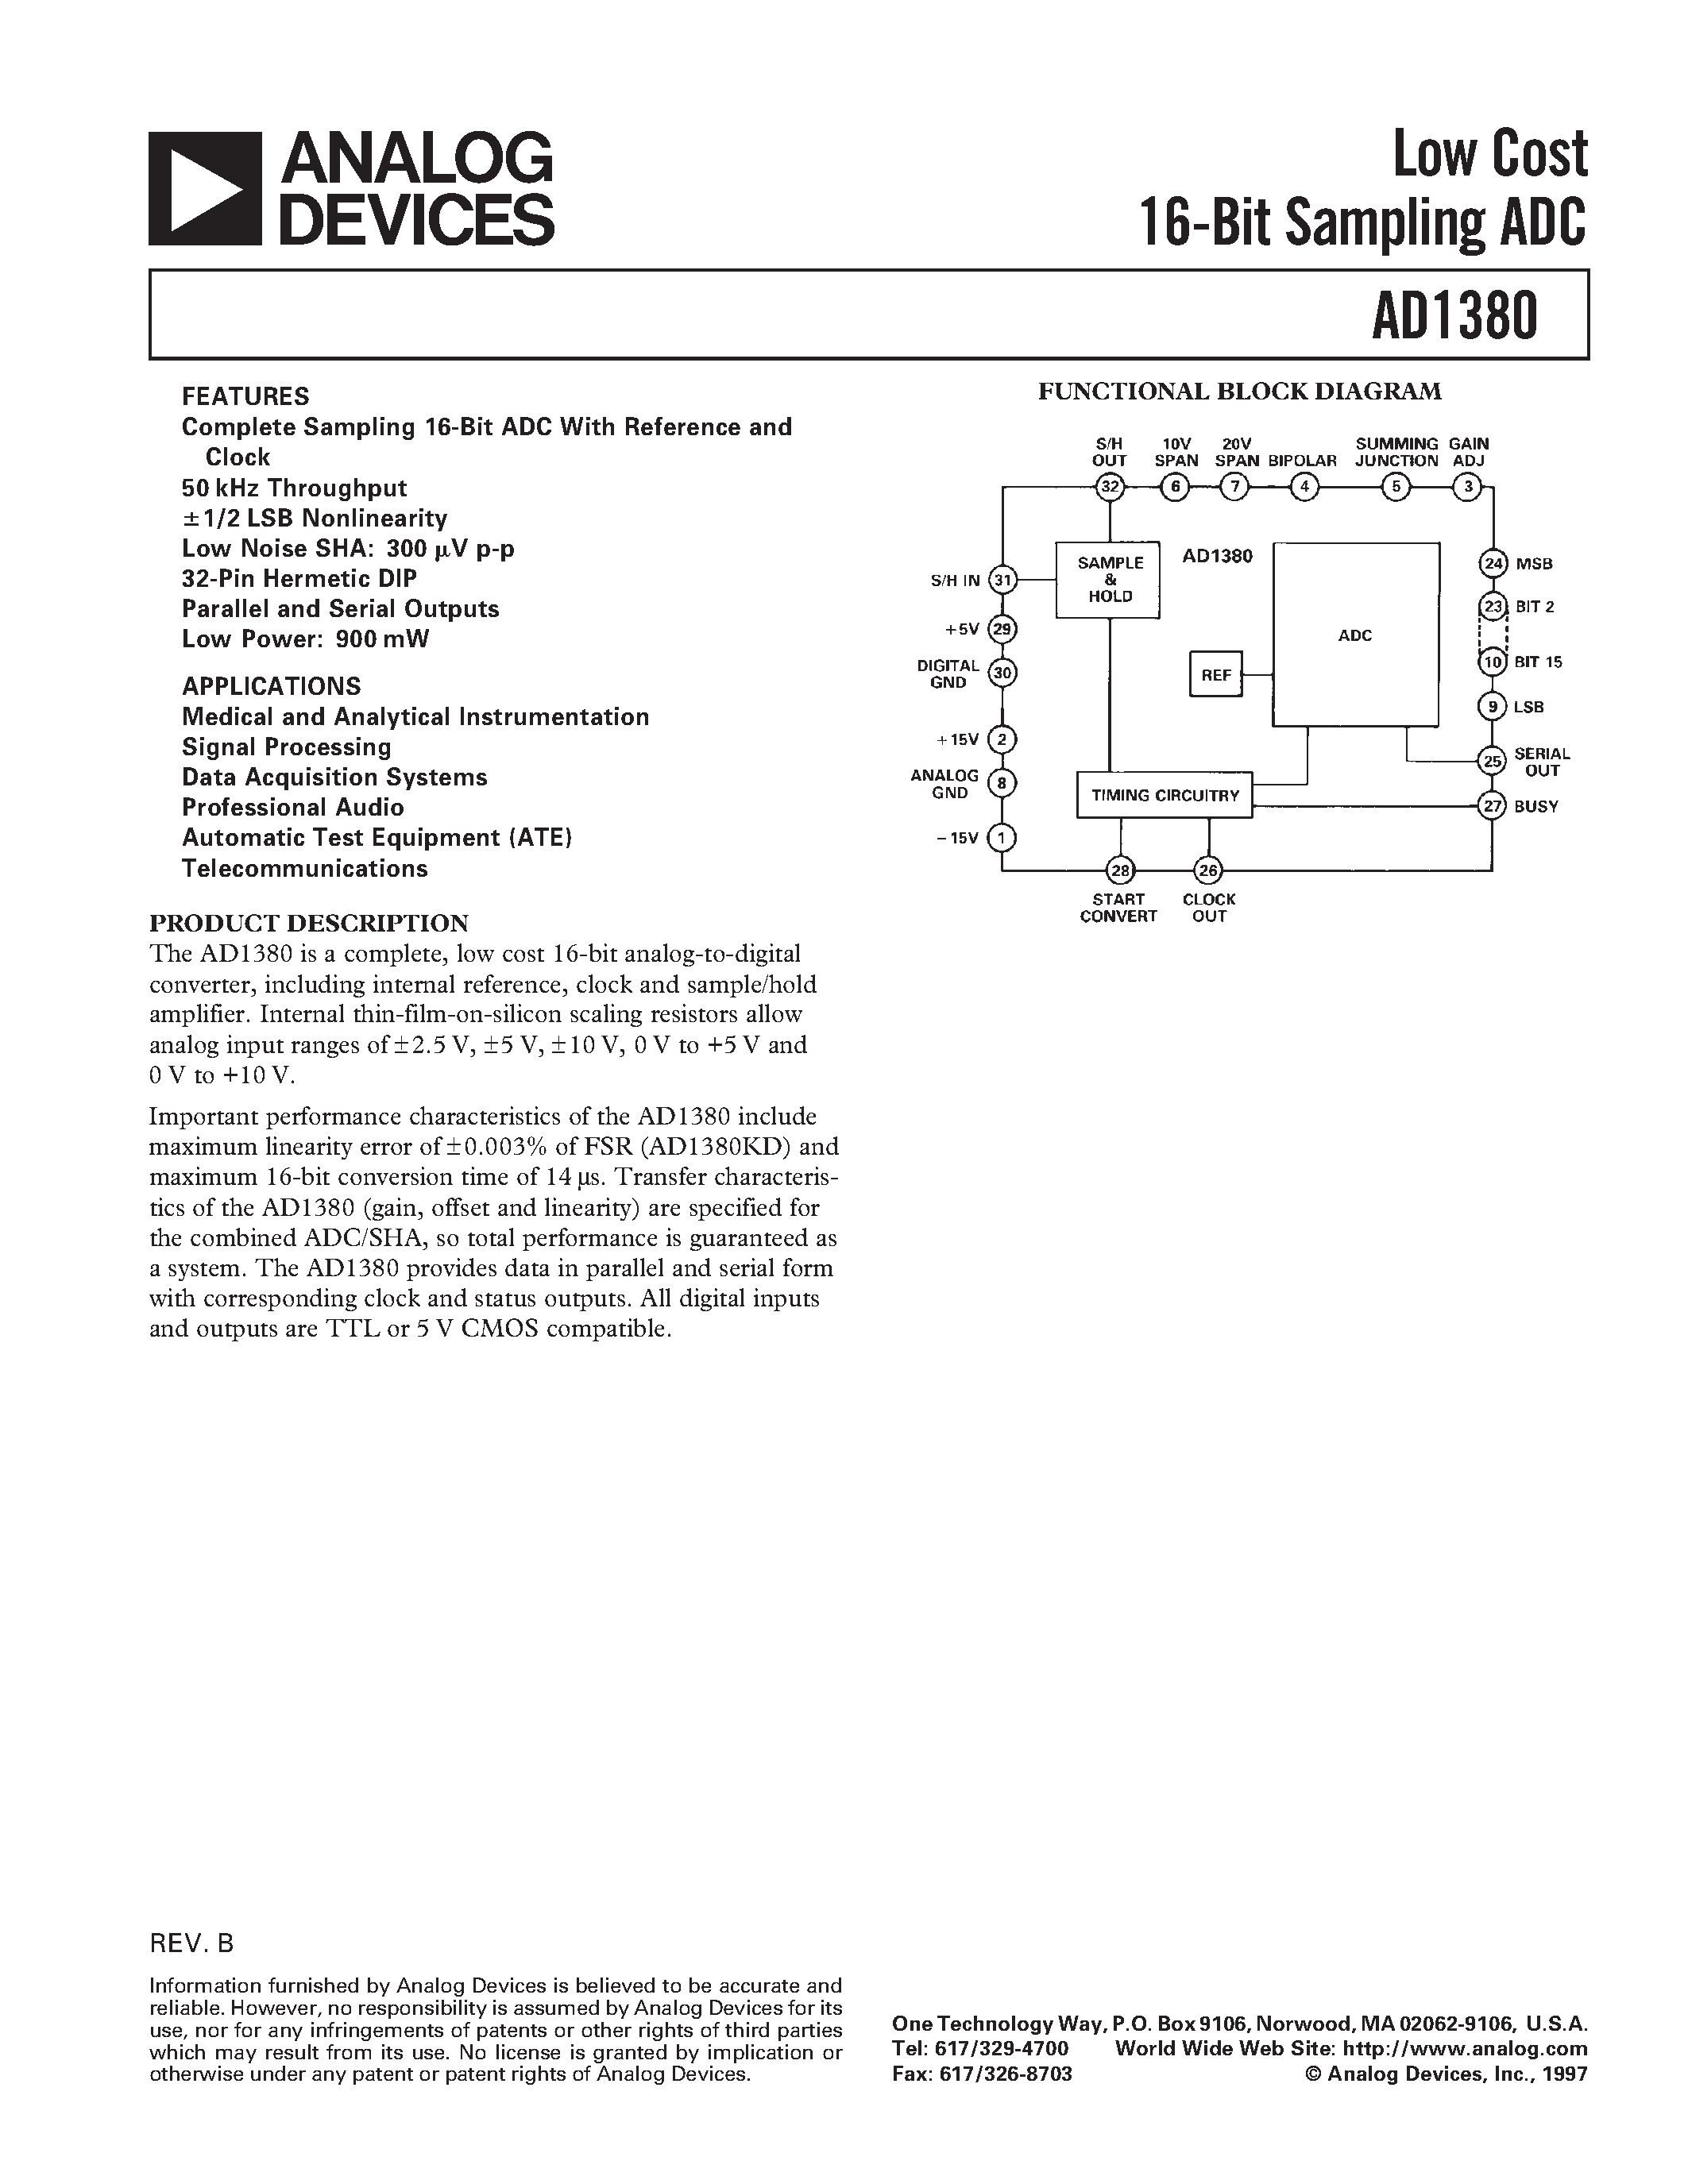 Даташит AD1380 - Low Cost 16-Bit Sampling ADC страница 1